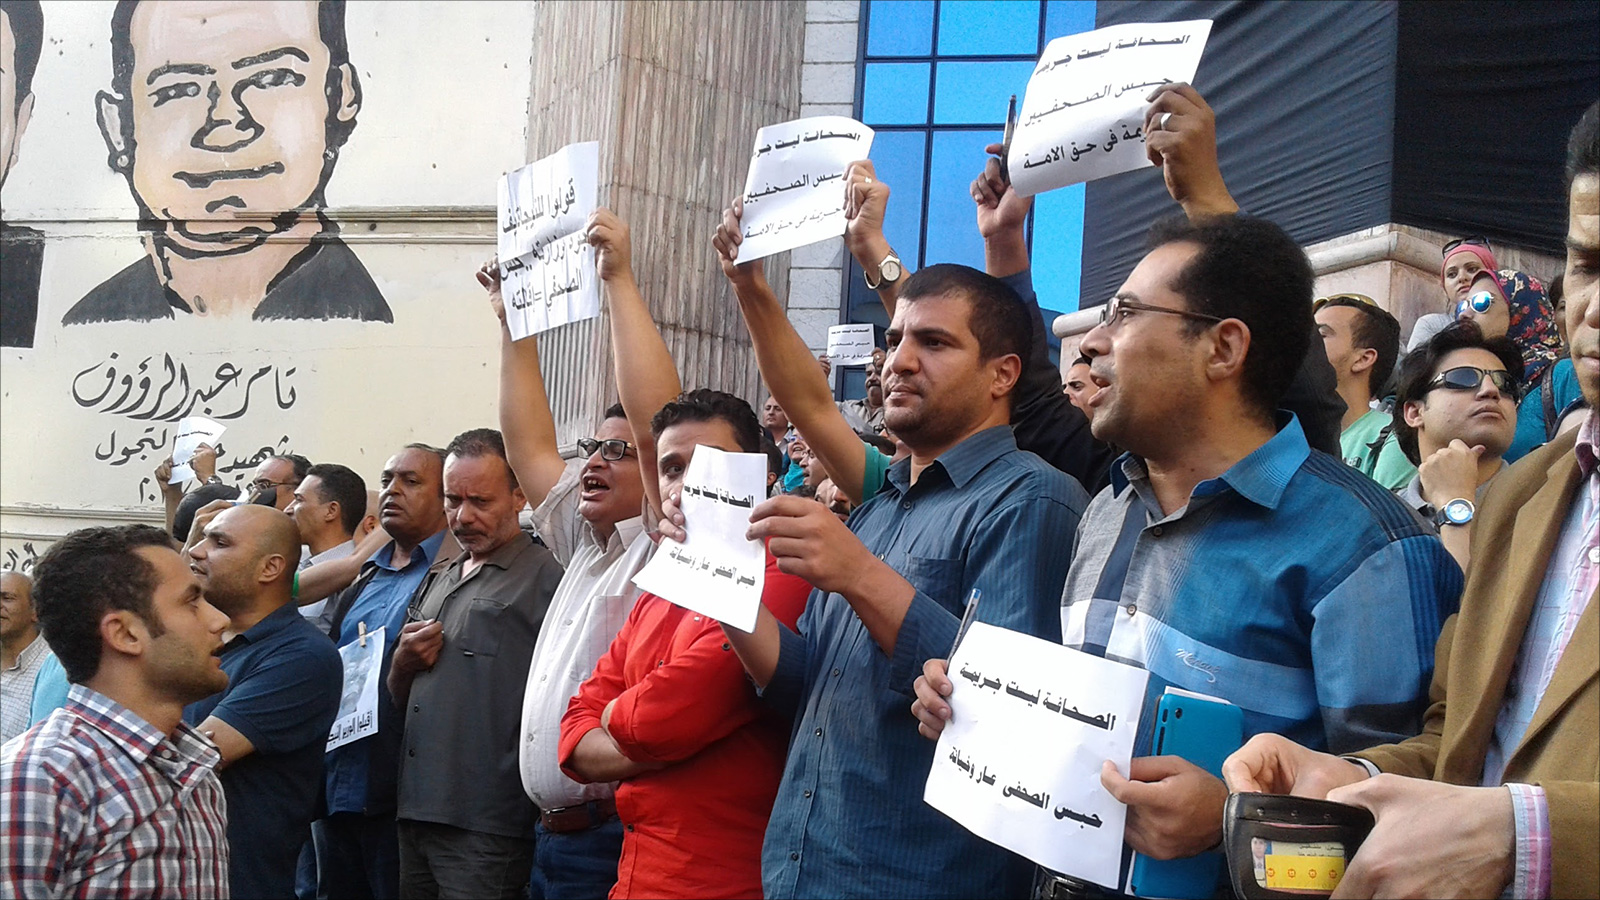 ‪مراقبون اعتبروا قضية مكرم محمد أحمد إلهاء عن قضايا أخرى تهم الصحفيين‬ (الجزيرة)